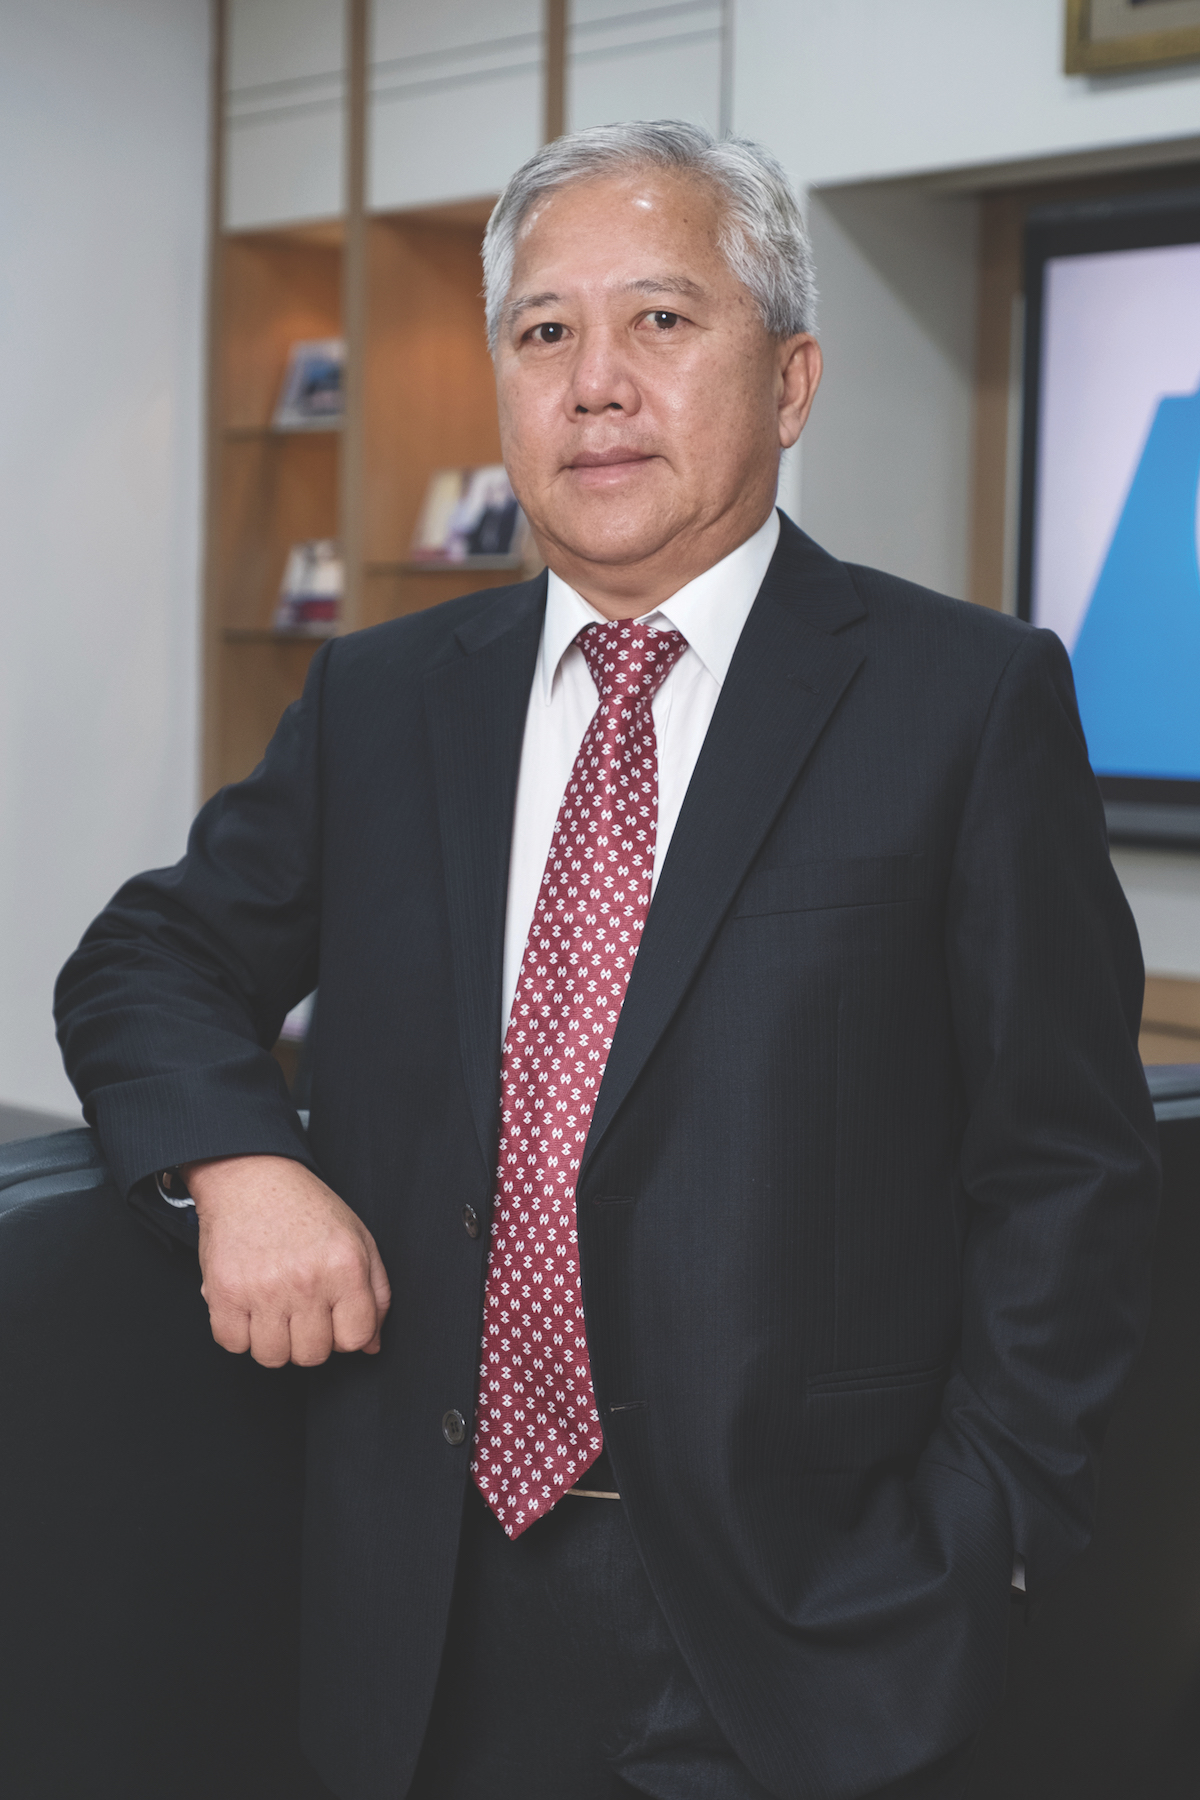 Pang Chong Yong Co-Founder & CEO of Gemilang International